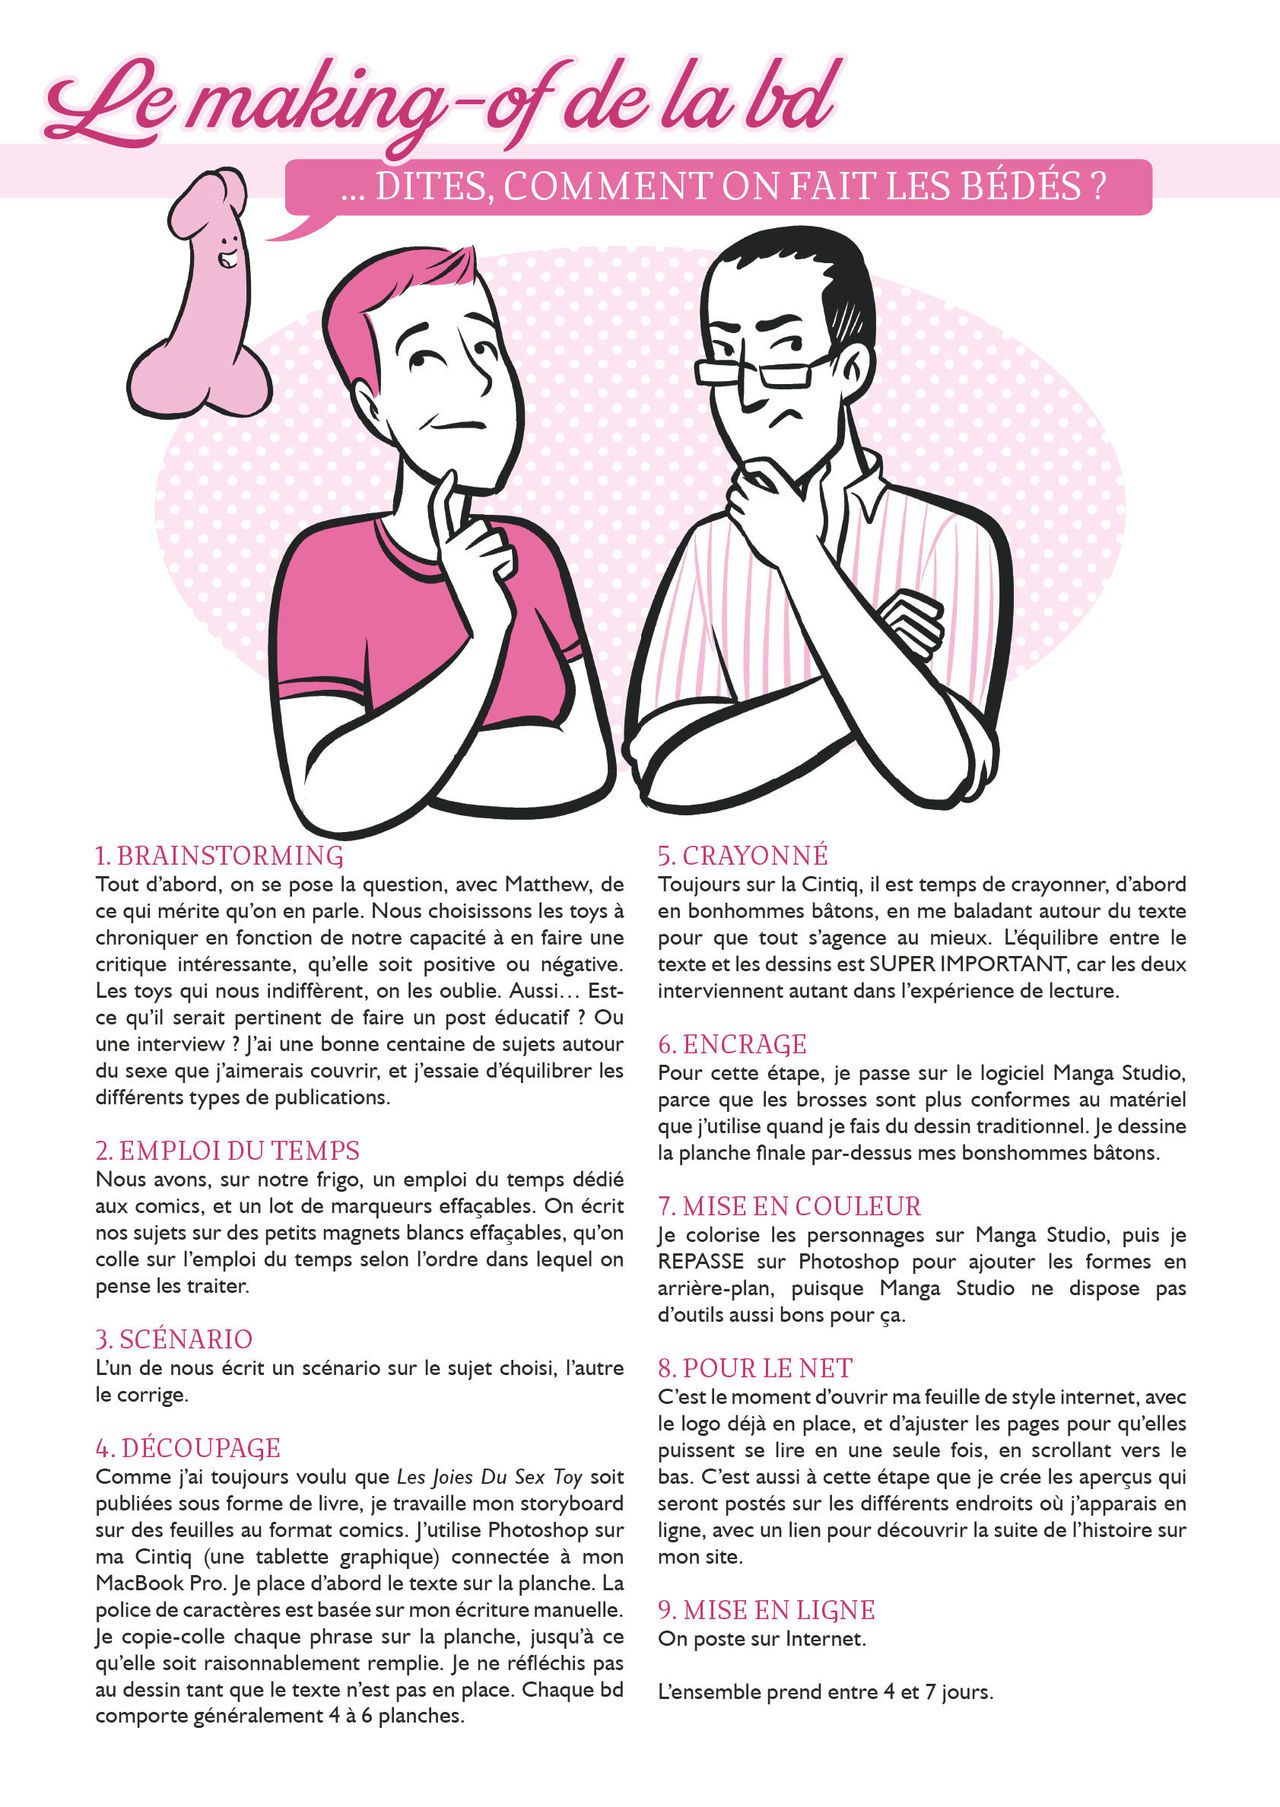 Les Joies du sex-toy et autres pratiques sexuelles [french] 284